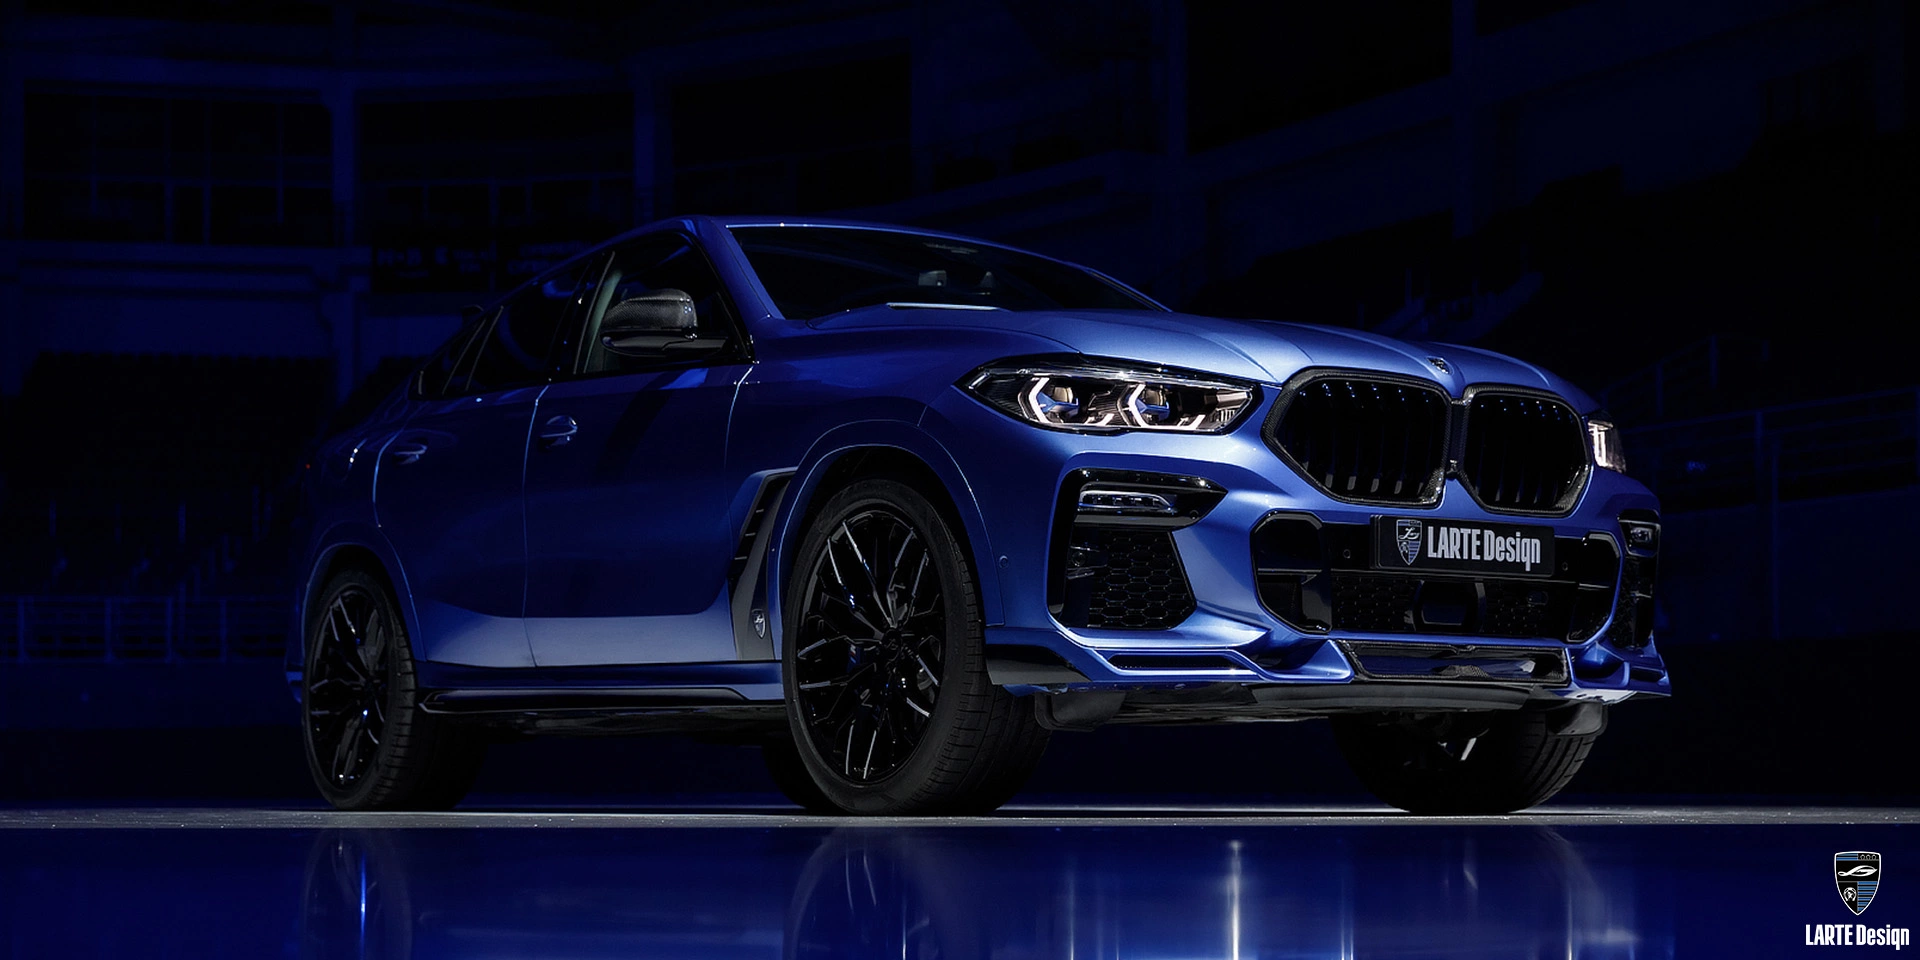 Kaufen Sie eine aerodynamische Frontlippe aus Carbonfaser für den LARTE Performance BMW X6 M Sport G06 in Phytonic Blue Metallic